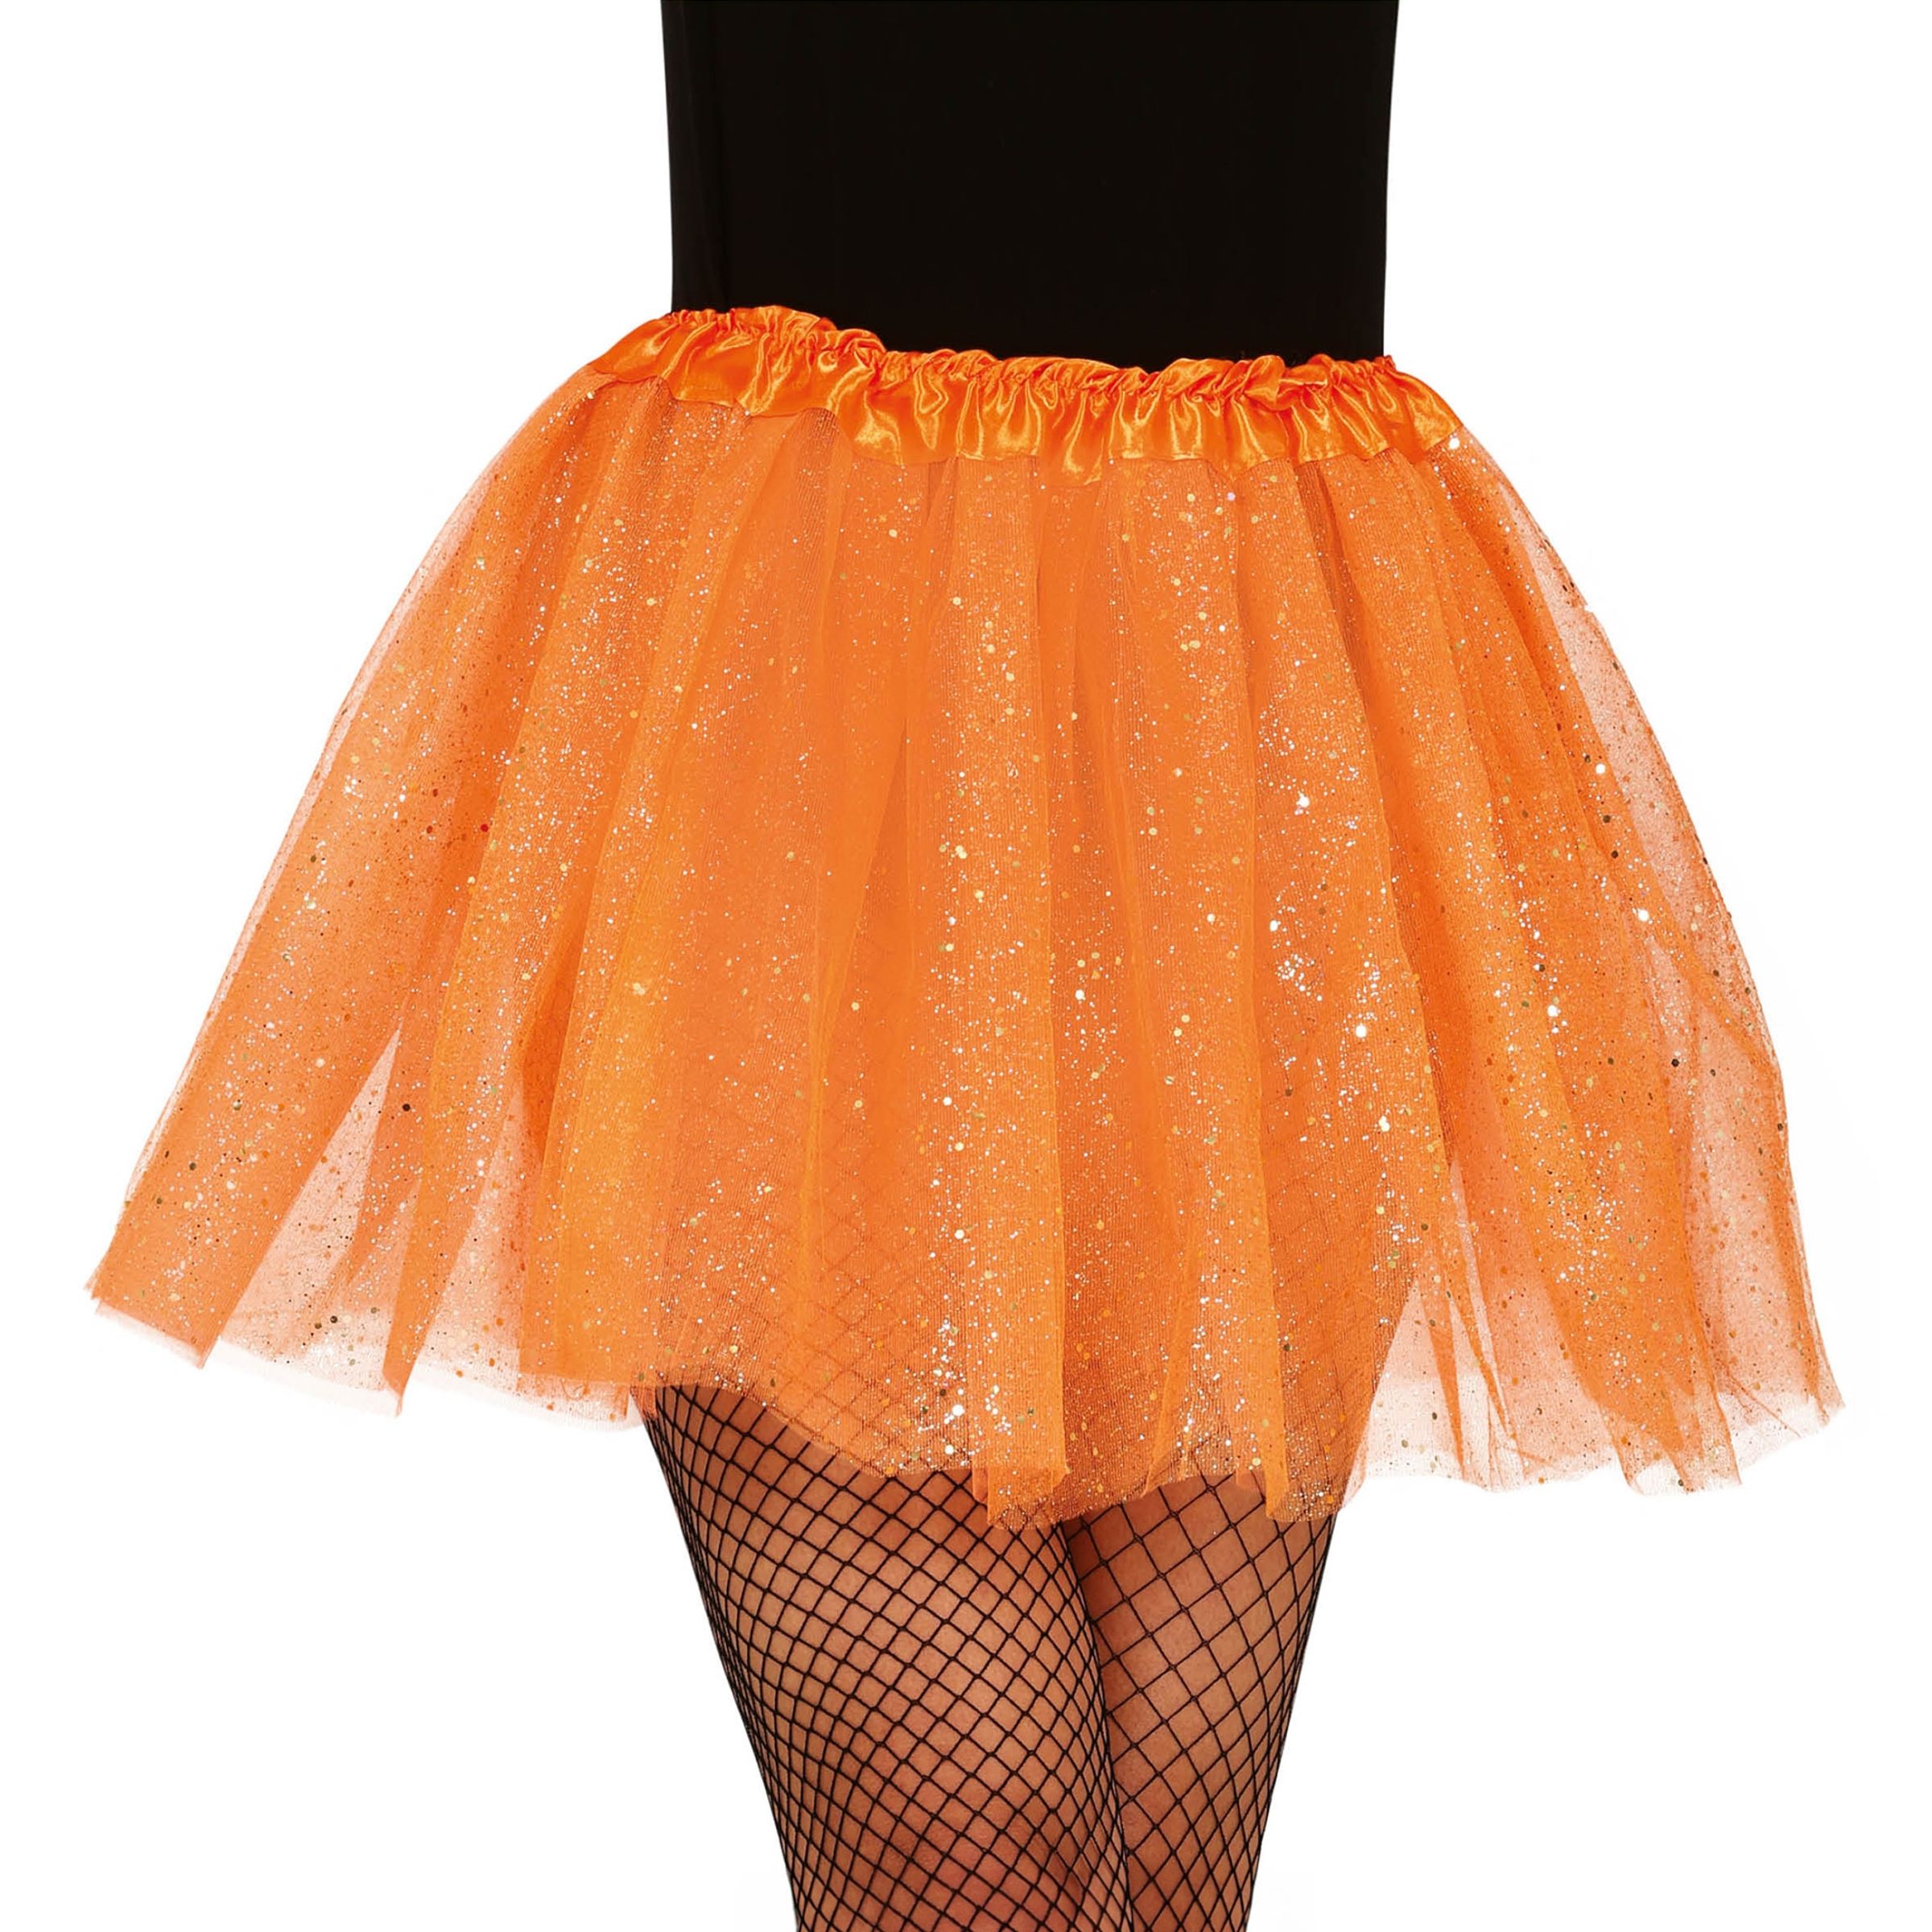 Orange Tyllkjol med Glitter - One size